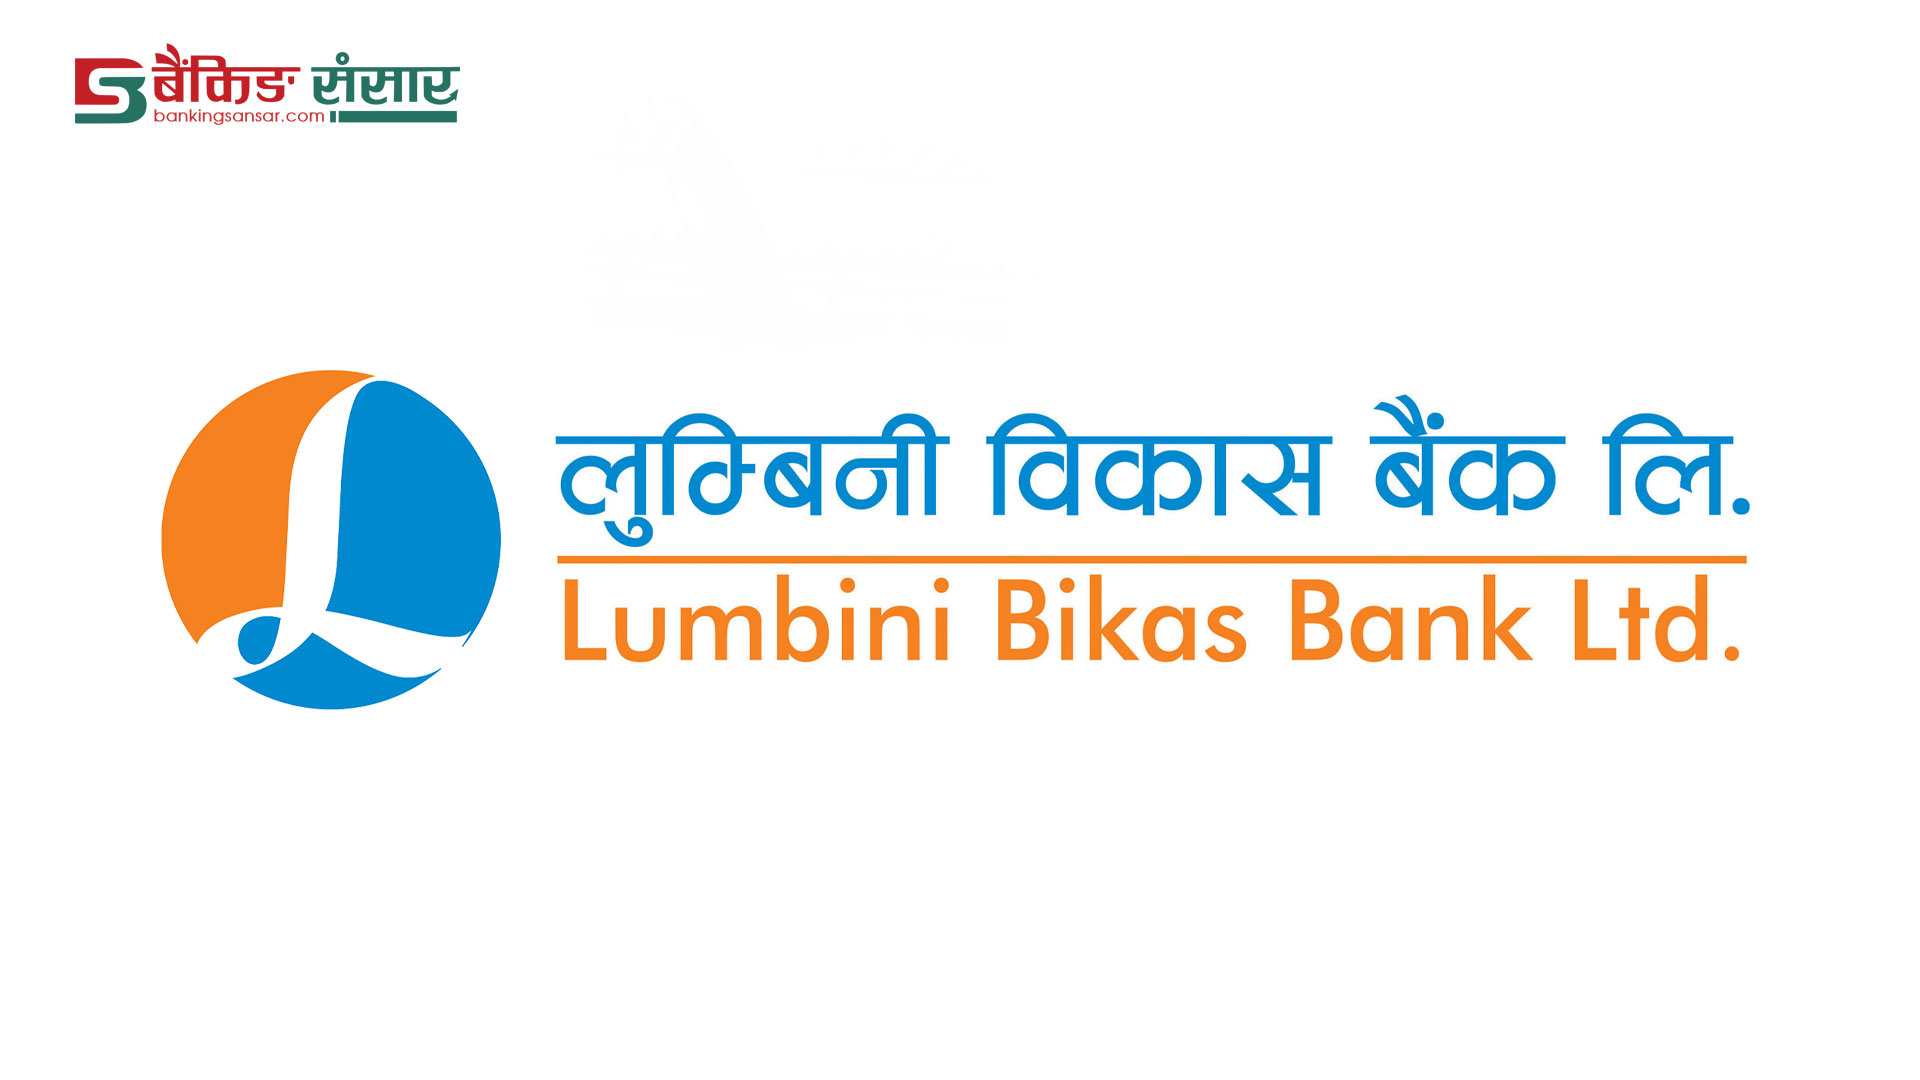 जागिर खाने हो ? लुम्बिनी विकास बैंकमा कर्मचारी माग, यस्तो छ आवश्यक योग्यता (सूचनासहित)